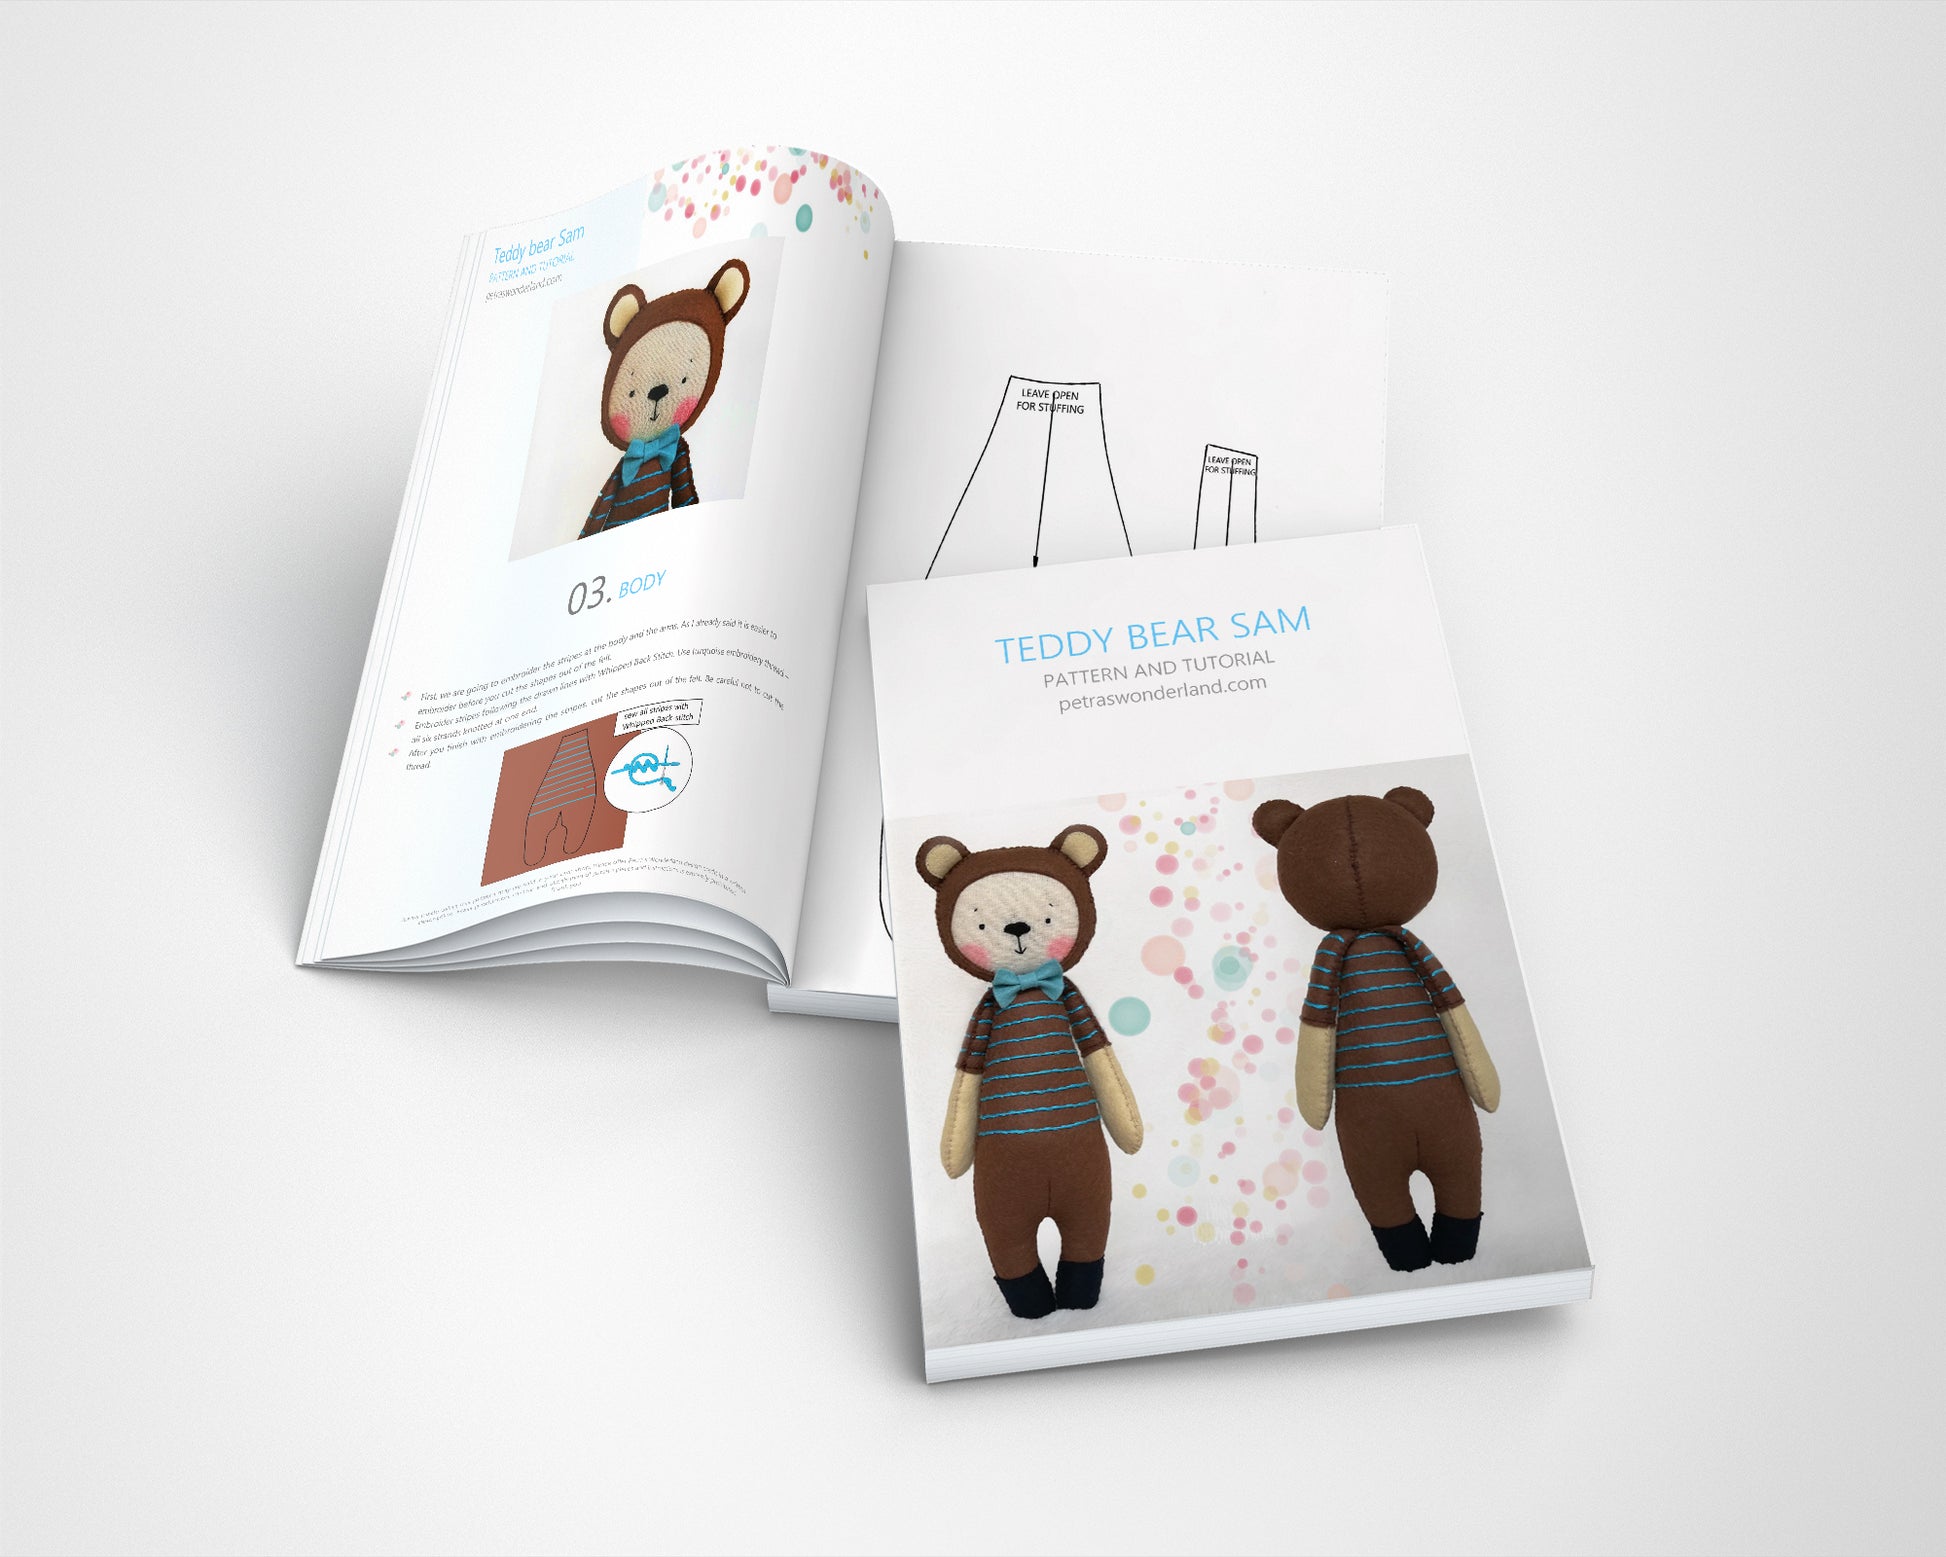 Teddy Bear Sam - PDF doll sewing pattern and tutorial 08